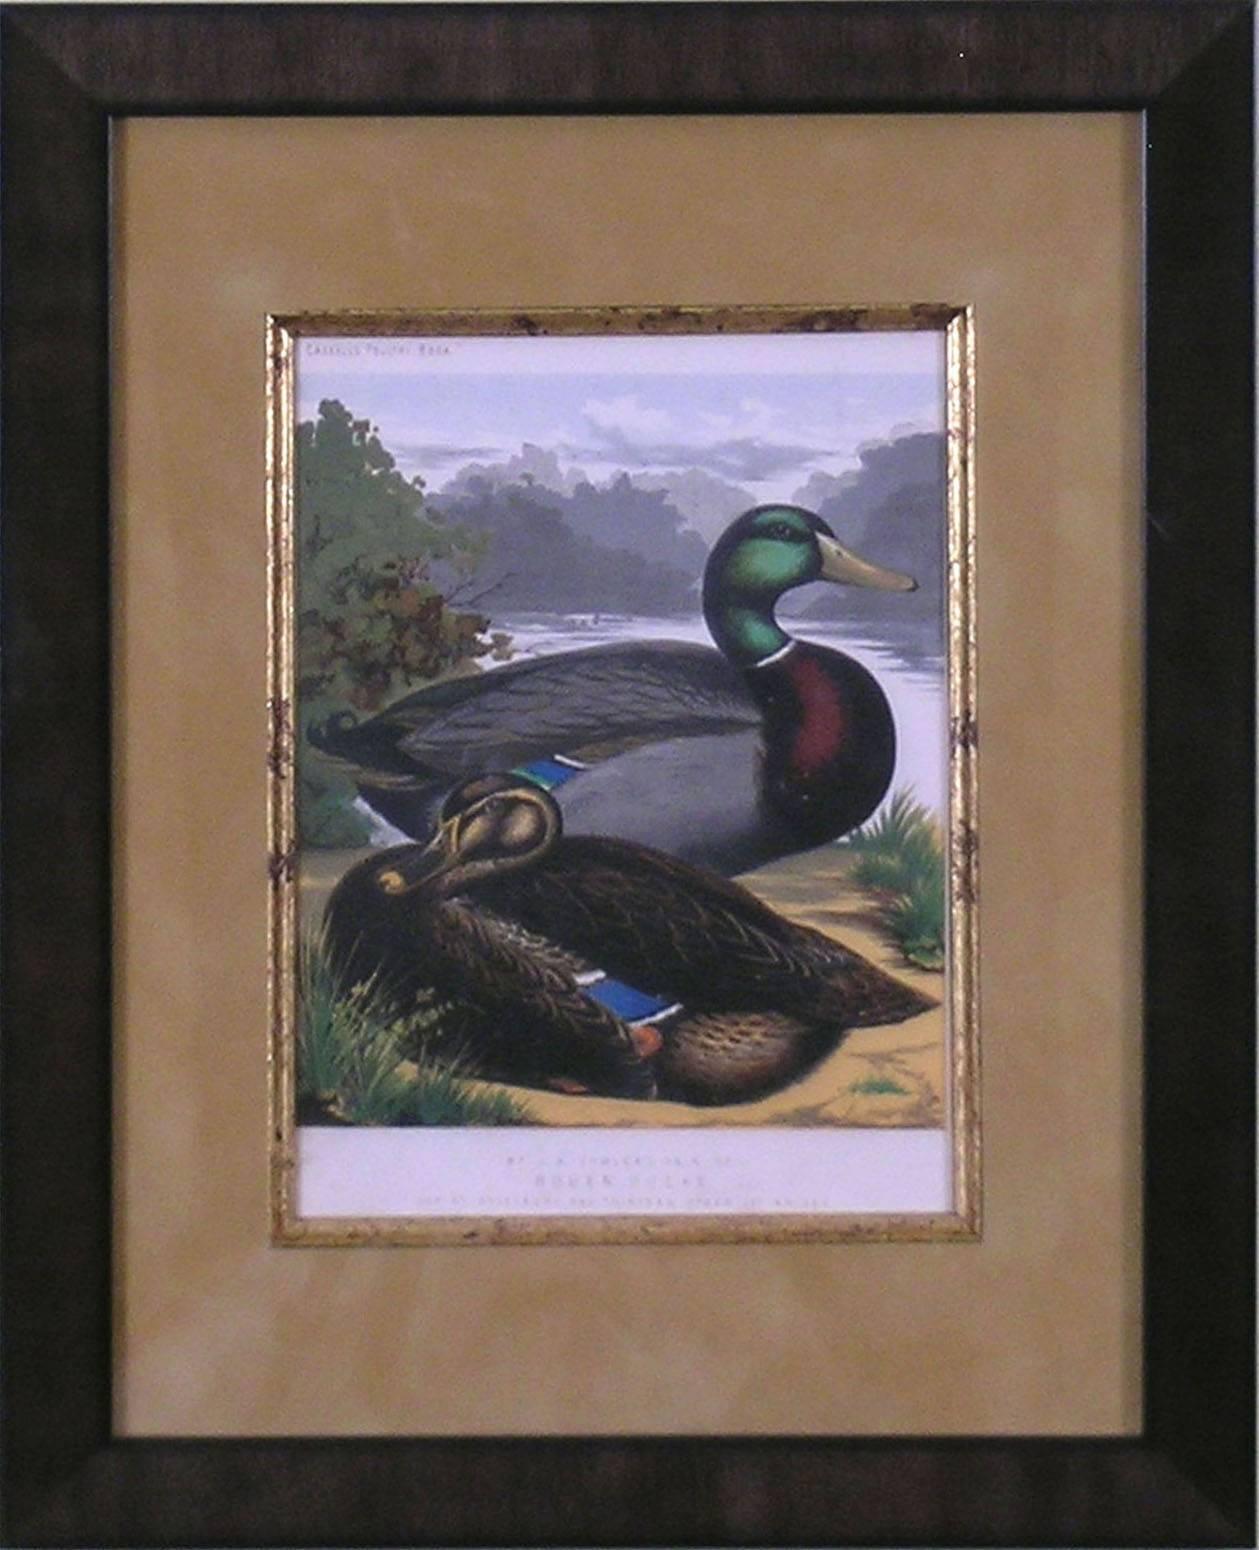 Rouen Ducks - Print by J.W. Ludlow